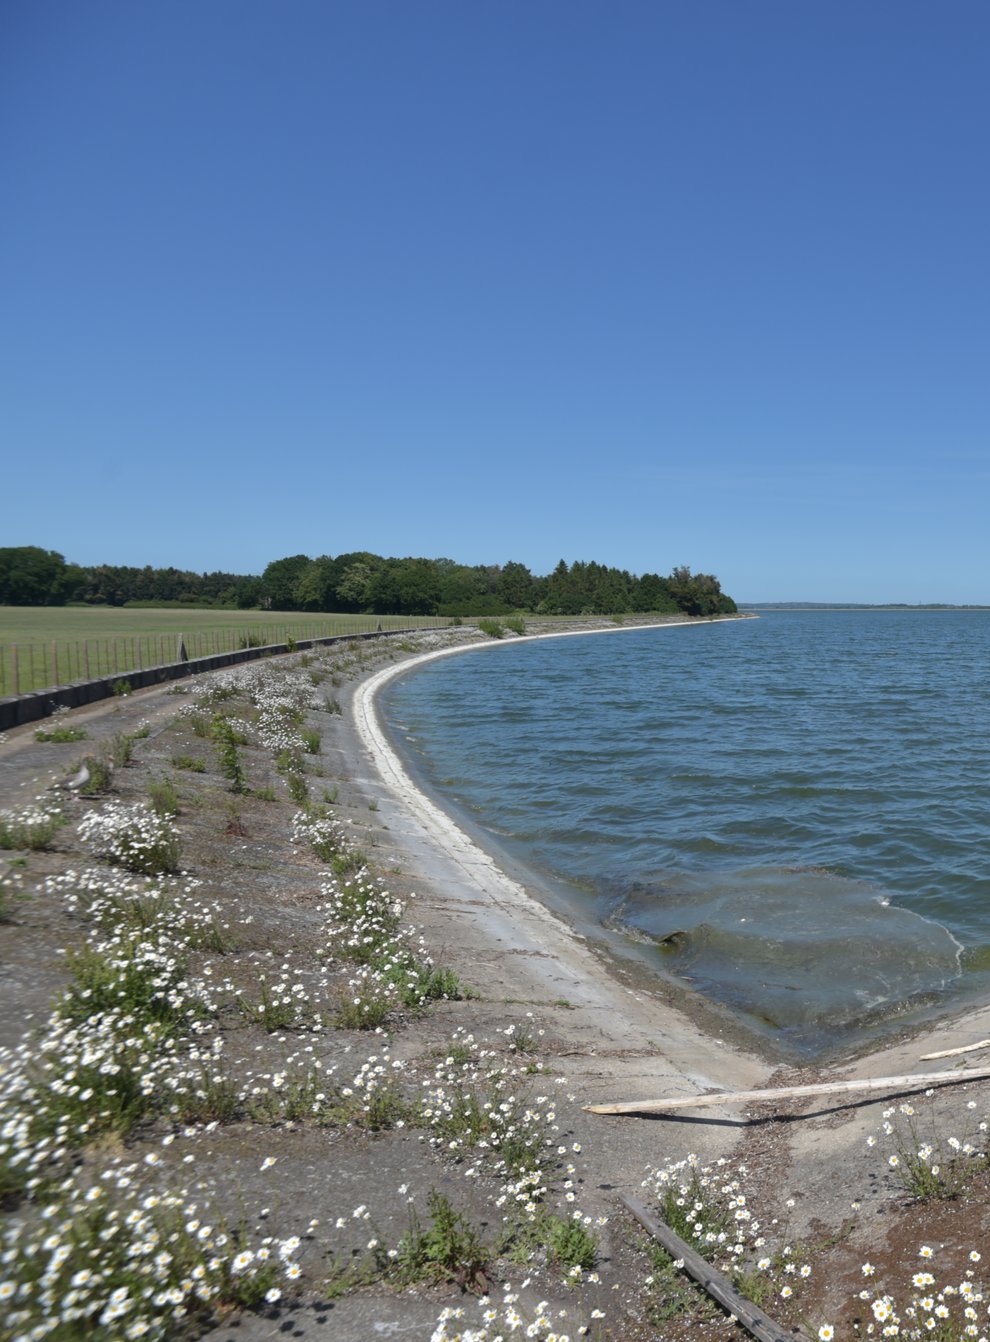 Hanningfield reservoir